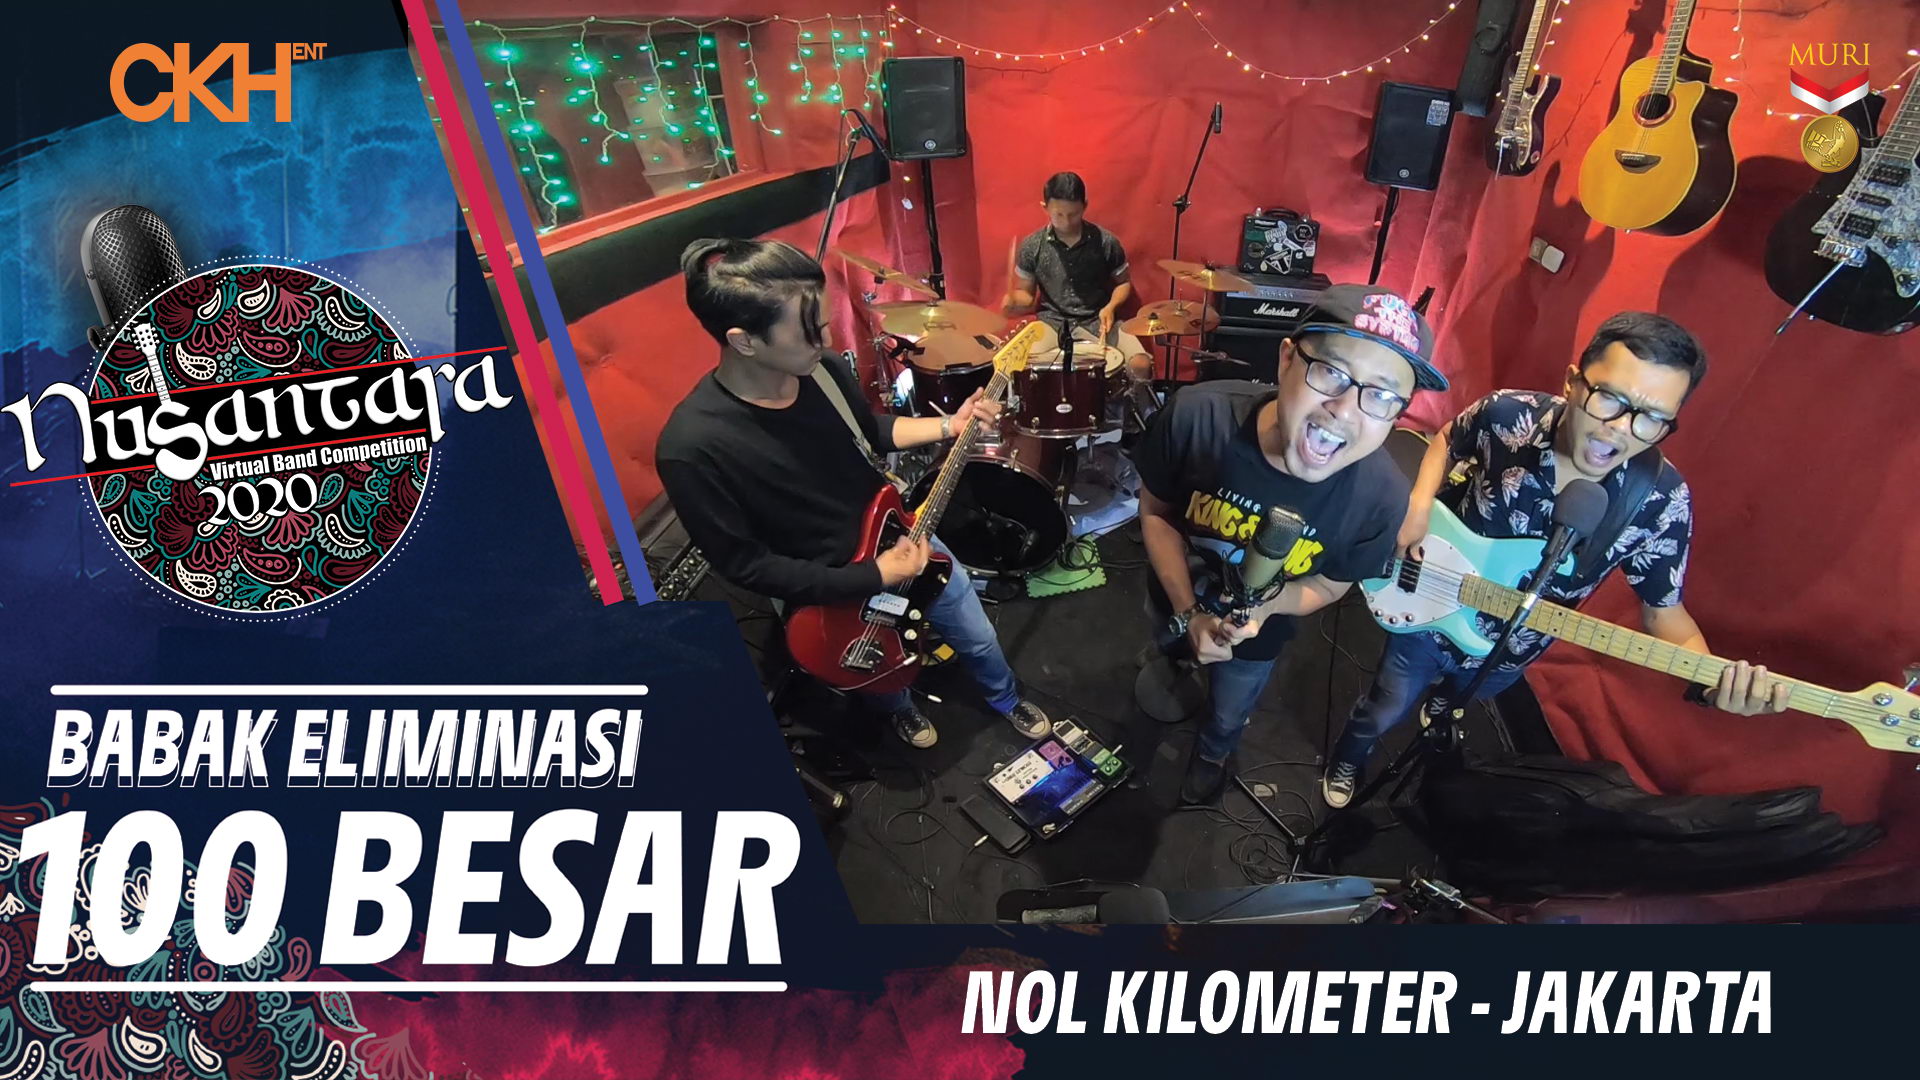 Nol Kilometer - Eliminasi 100 Besar Nusantara Virtual Band Competition